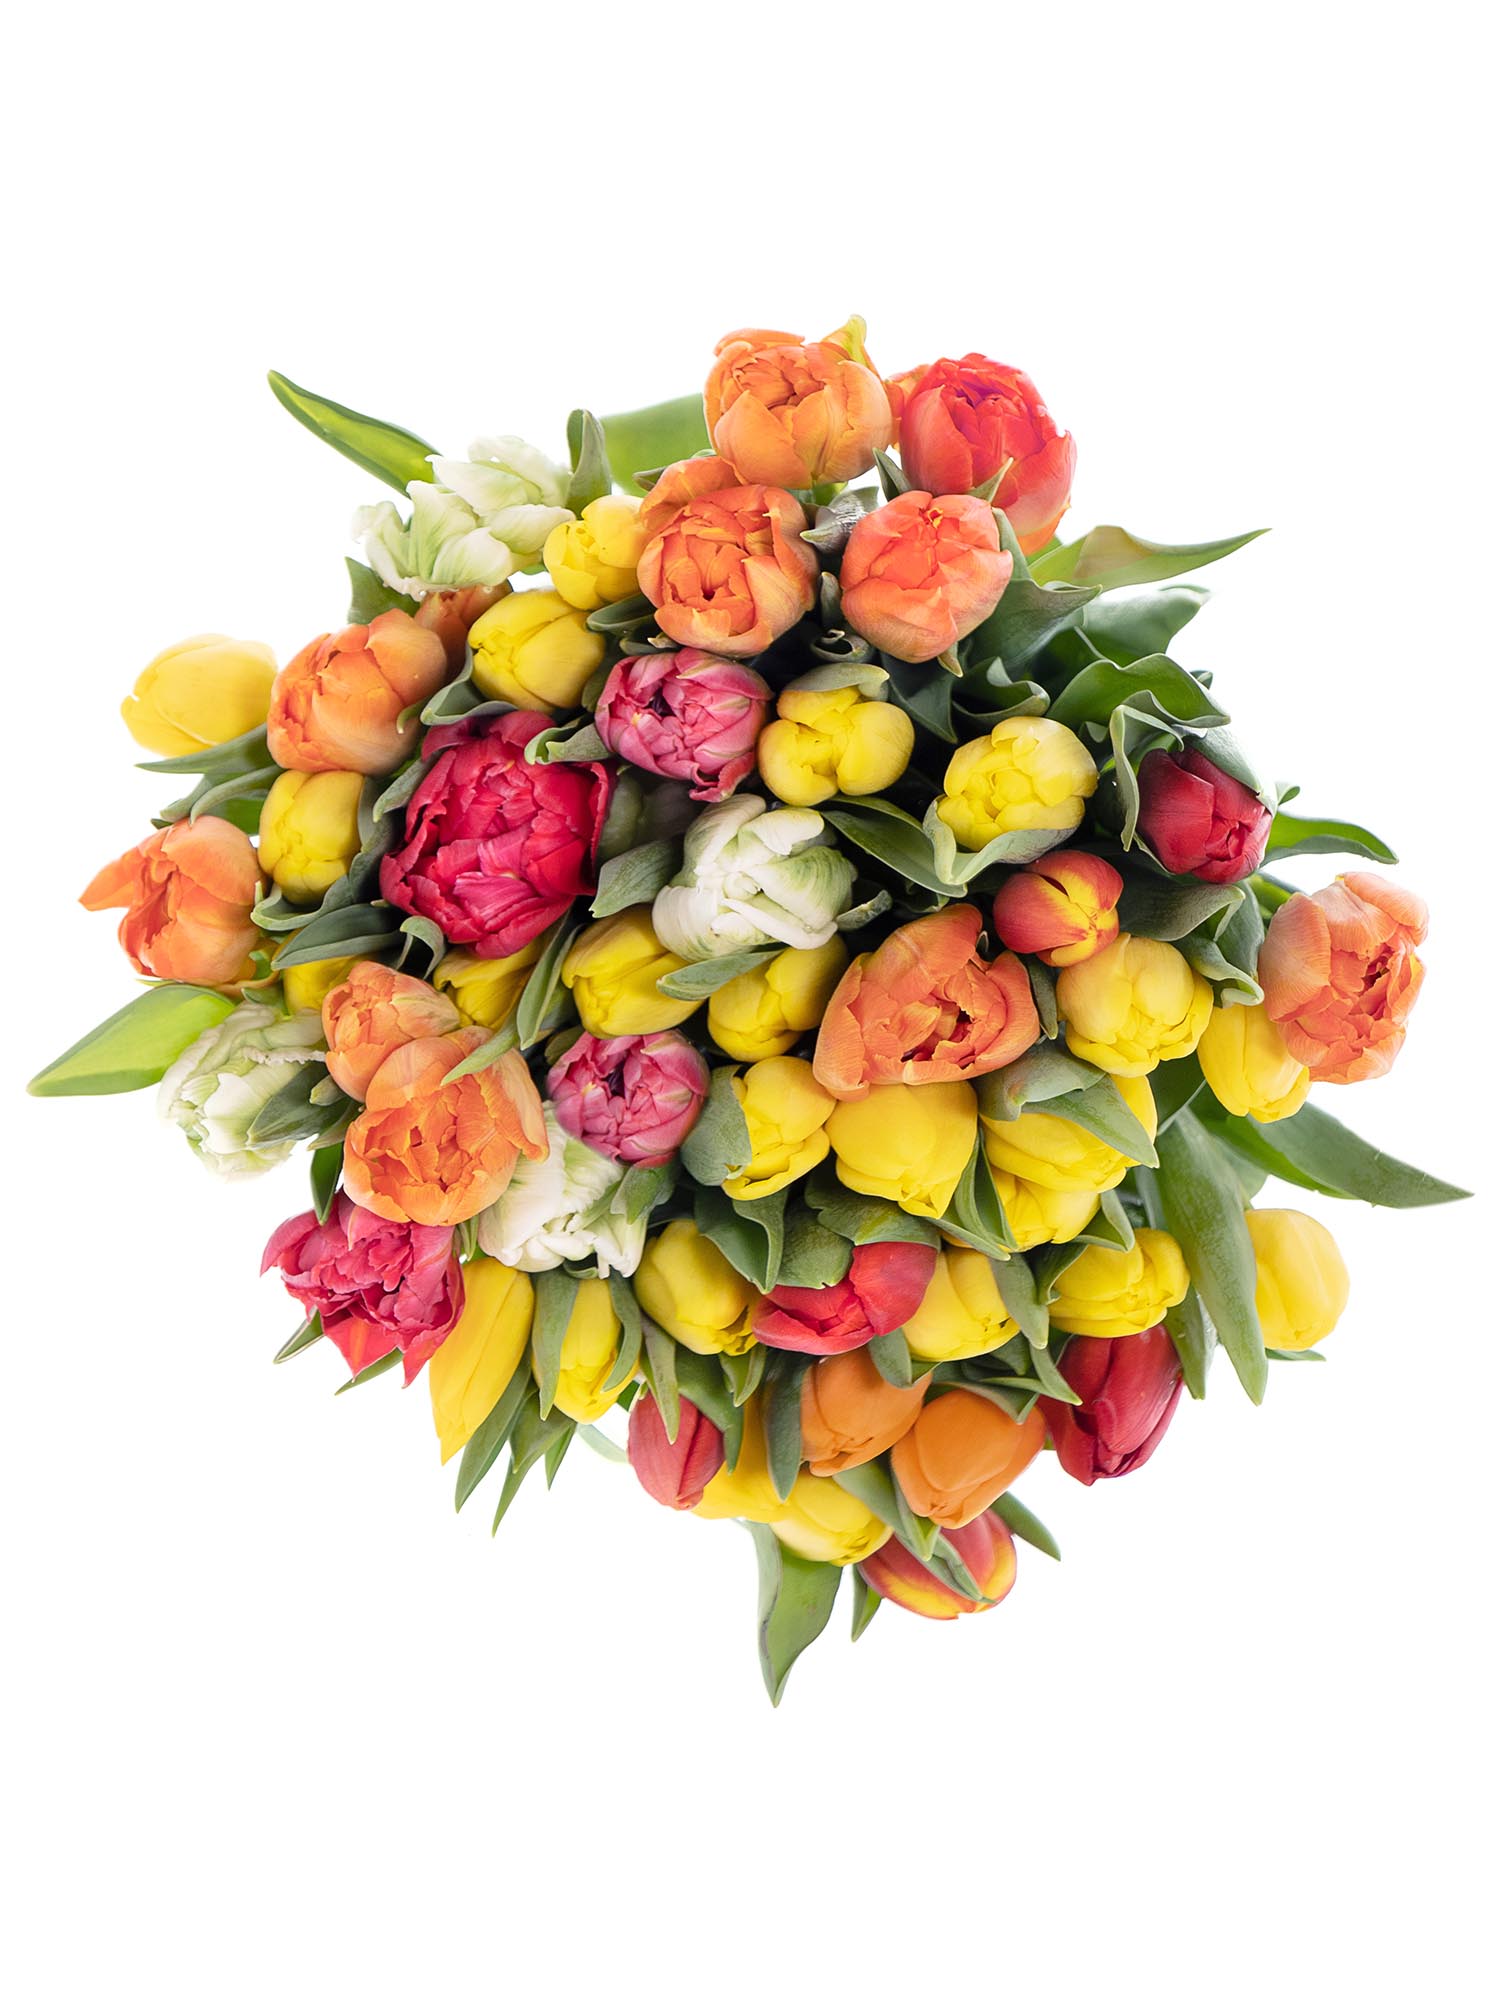 Blumenfrisch inkl Bunter Blumenstrauß mit 50 frischen Tulpen im frühlingshaften Farbmix 